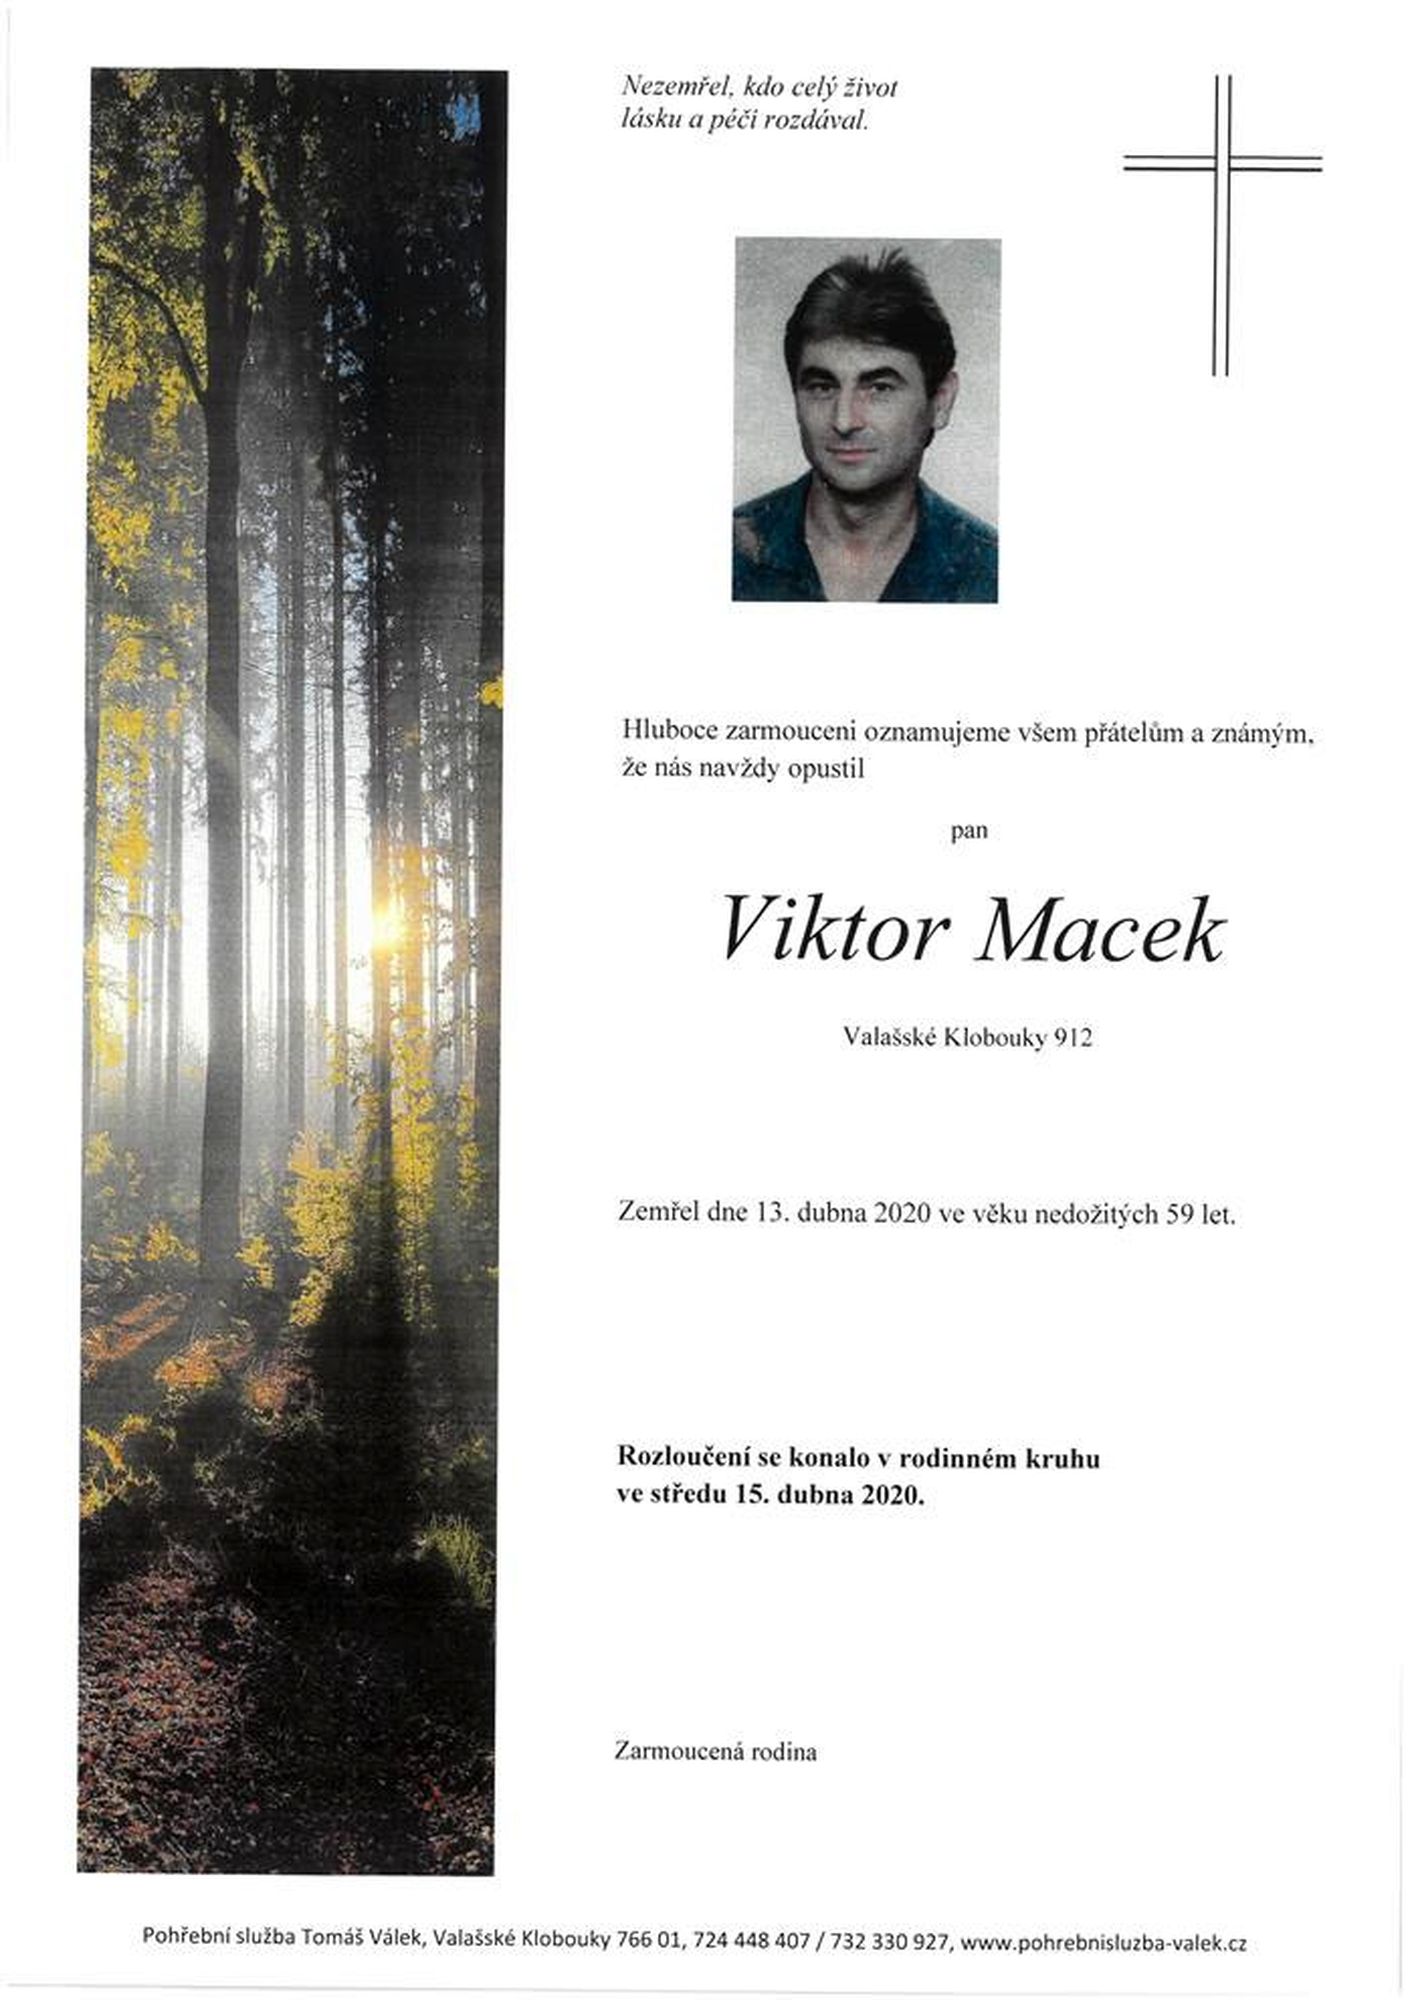 Viktor Macek